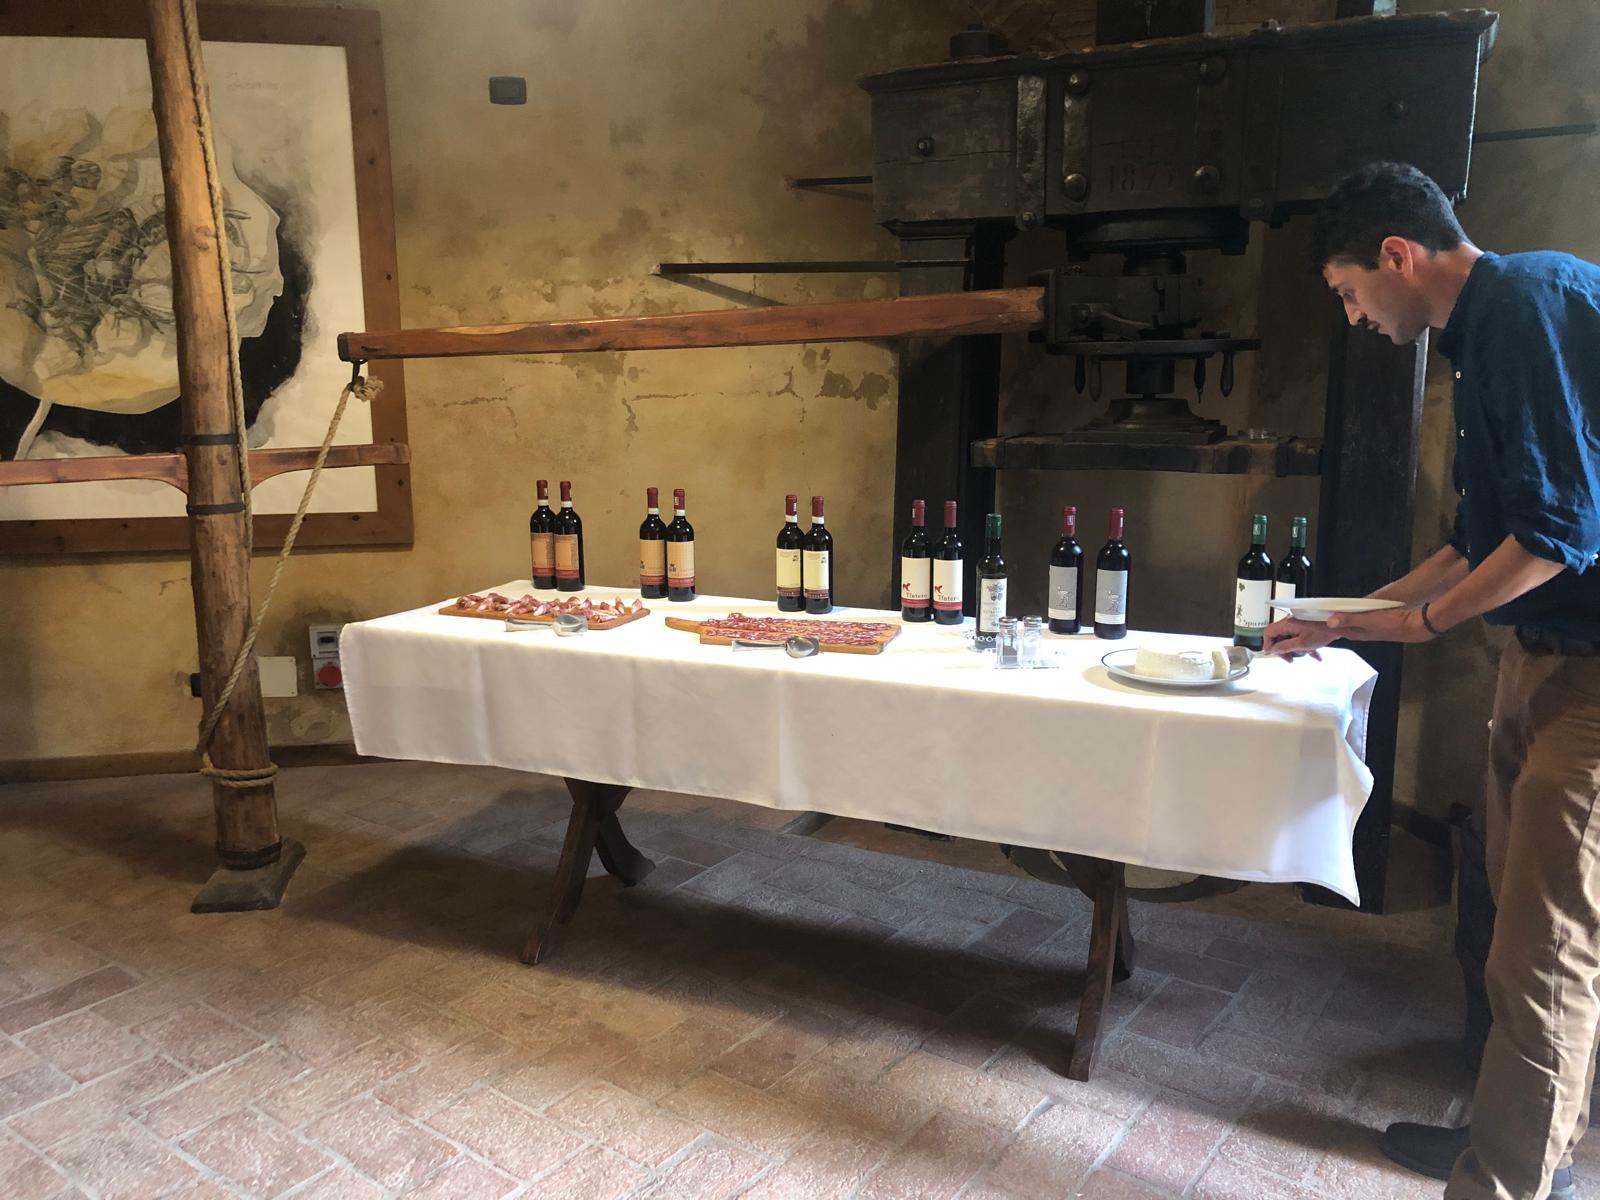 Visita con degustazione presso la Fattoria Majnoni Guicciardini, nel Chianti